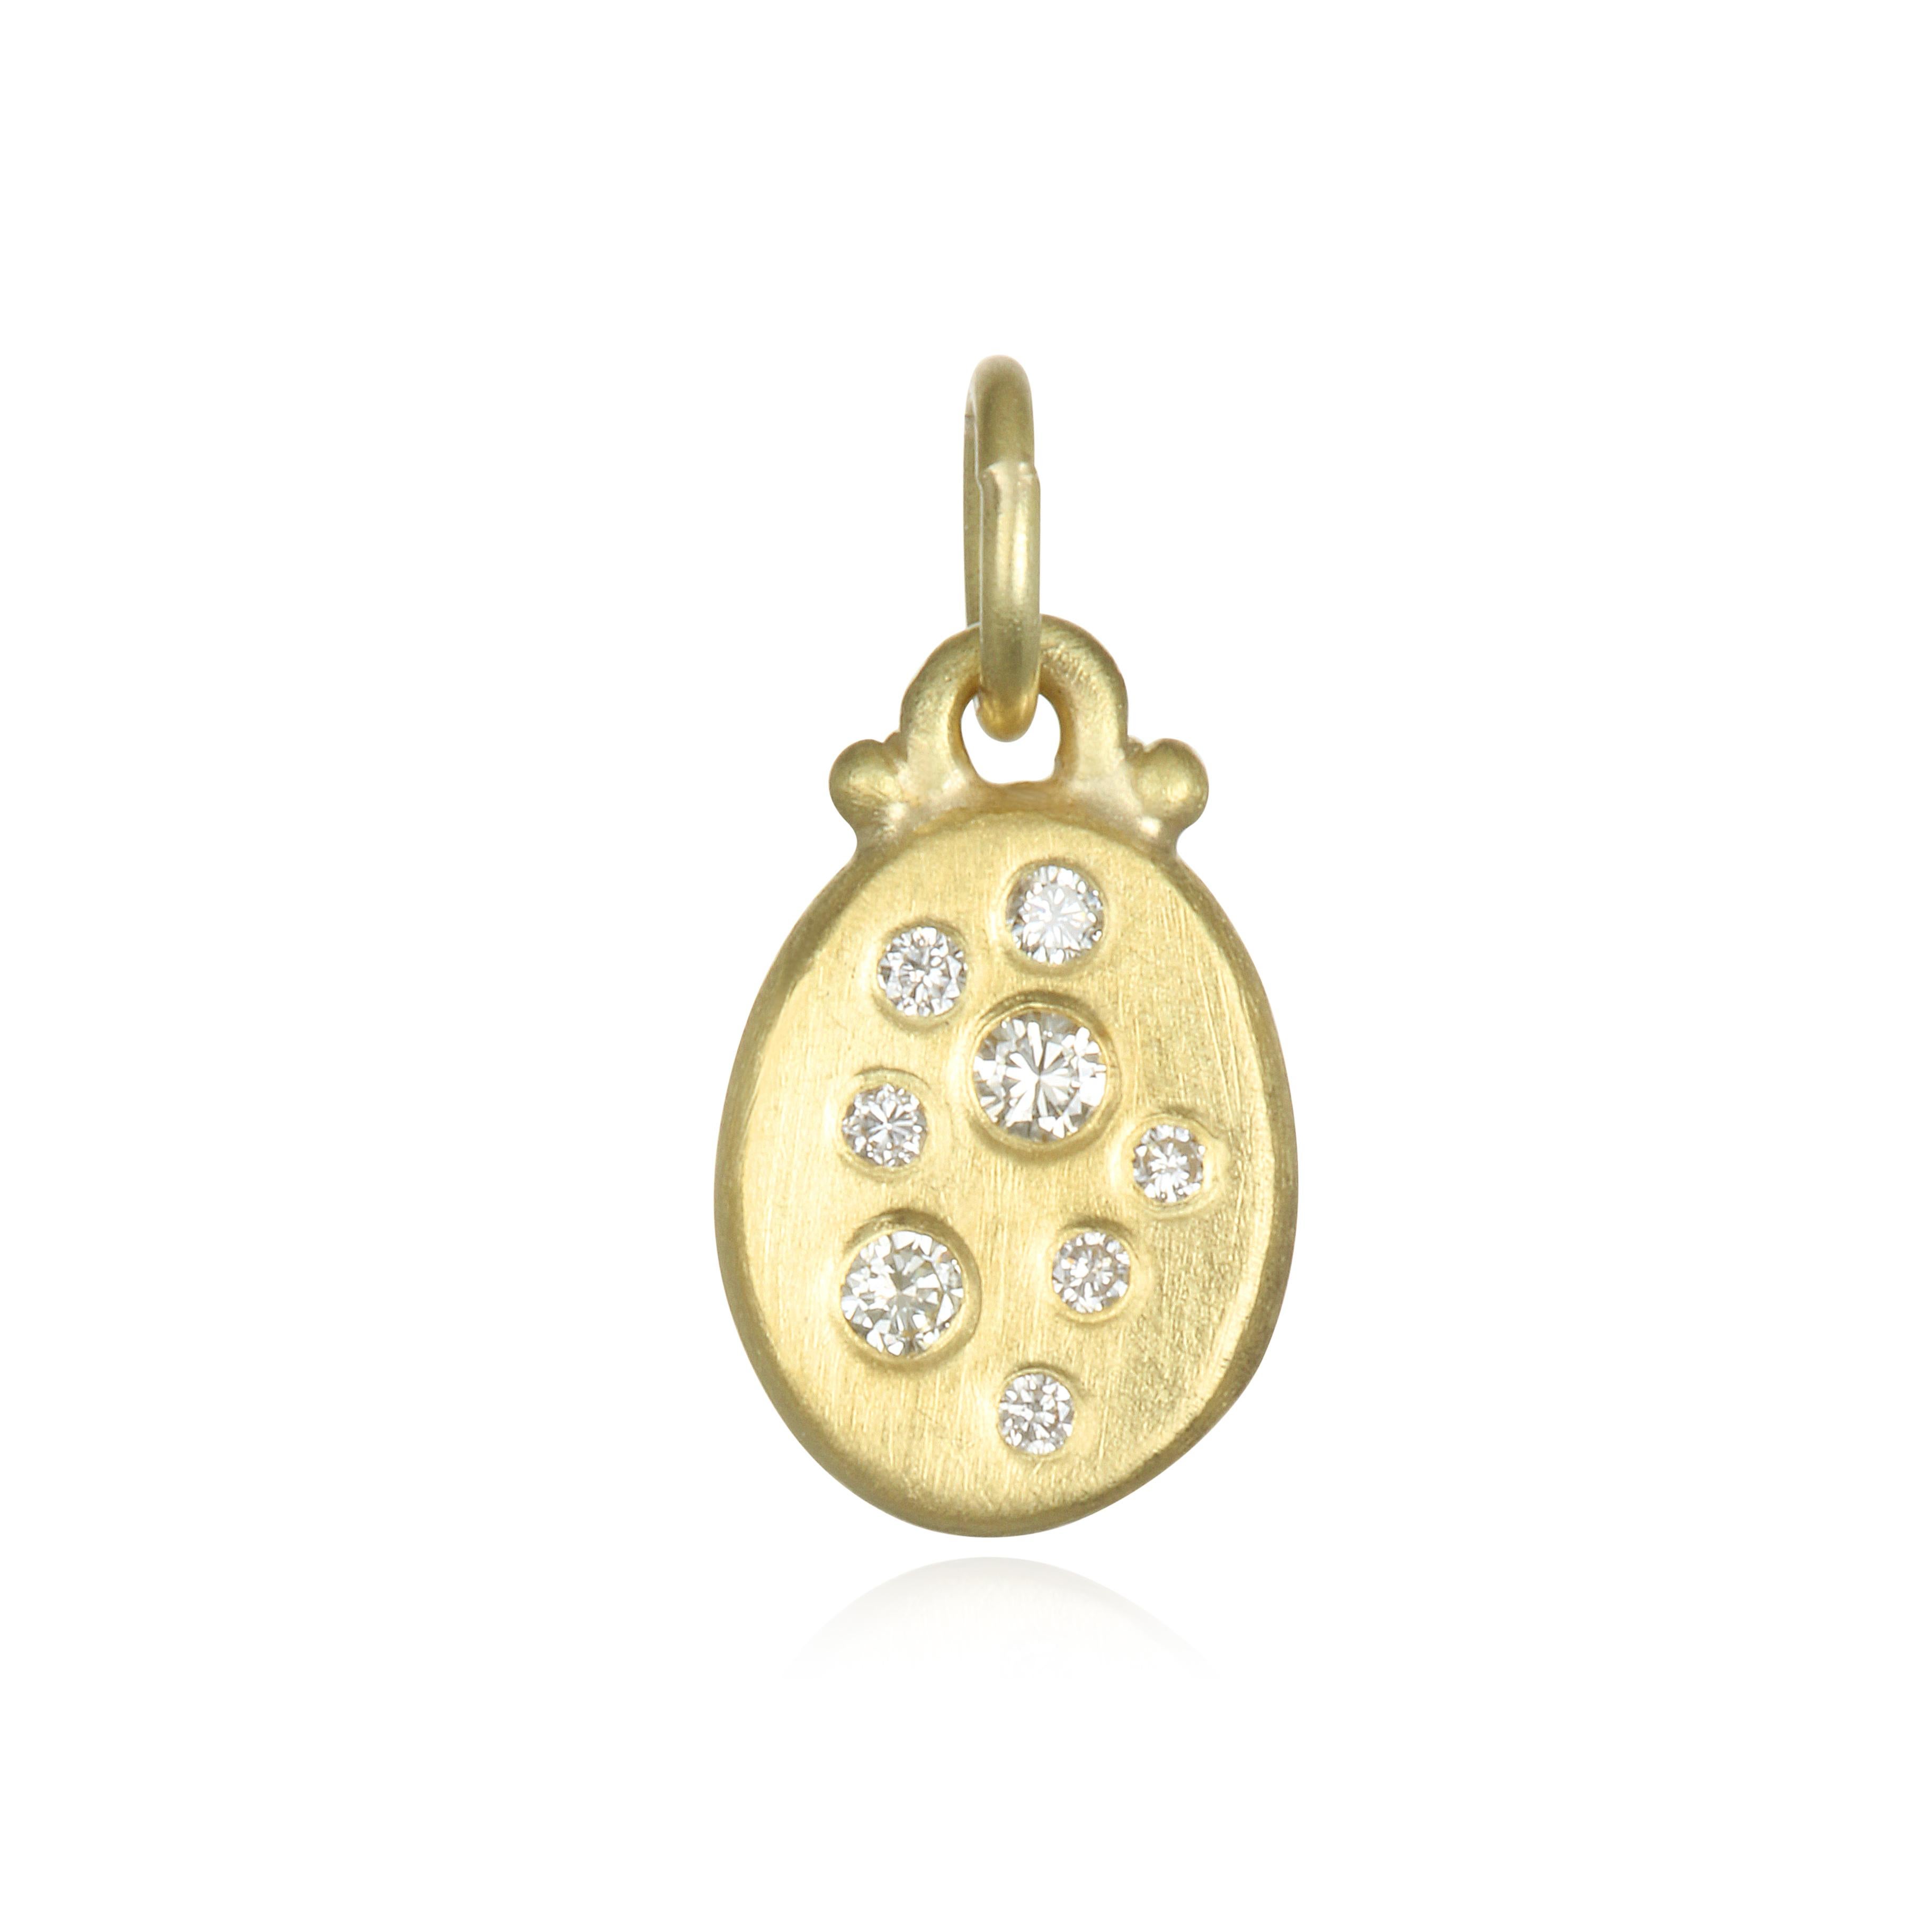 Polyvalente et facile à porter, la version mini des populaires pendentifs Dog Tag en diamant de Faye est parfaite pour tous les jours. Le pendentif est fini mat en or vert 18 carats et est suspendu à une chaîne à câble réglable de 1,5 mm de